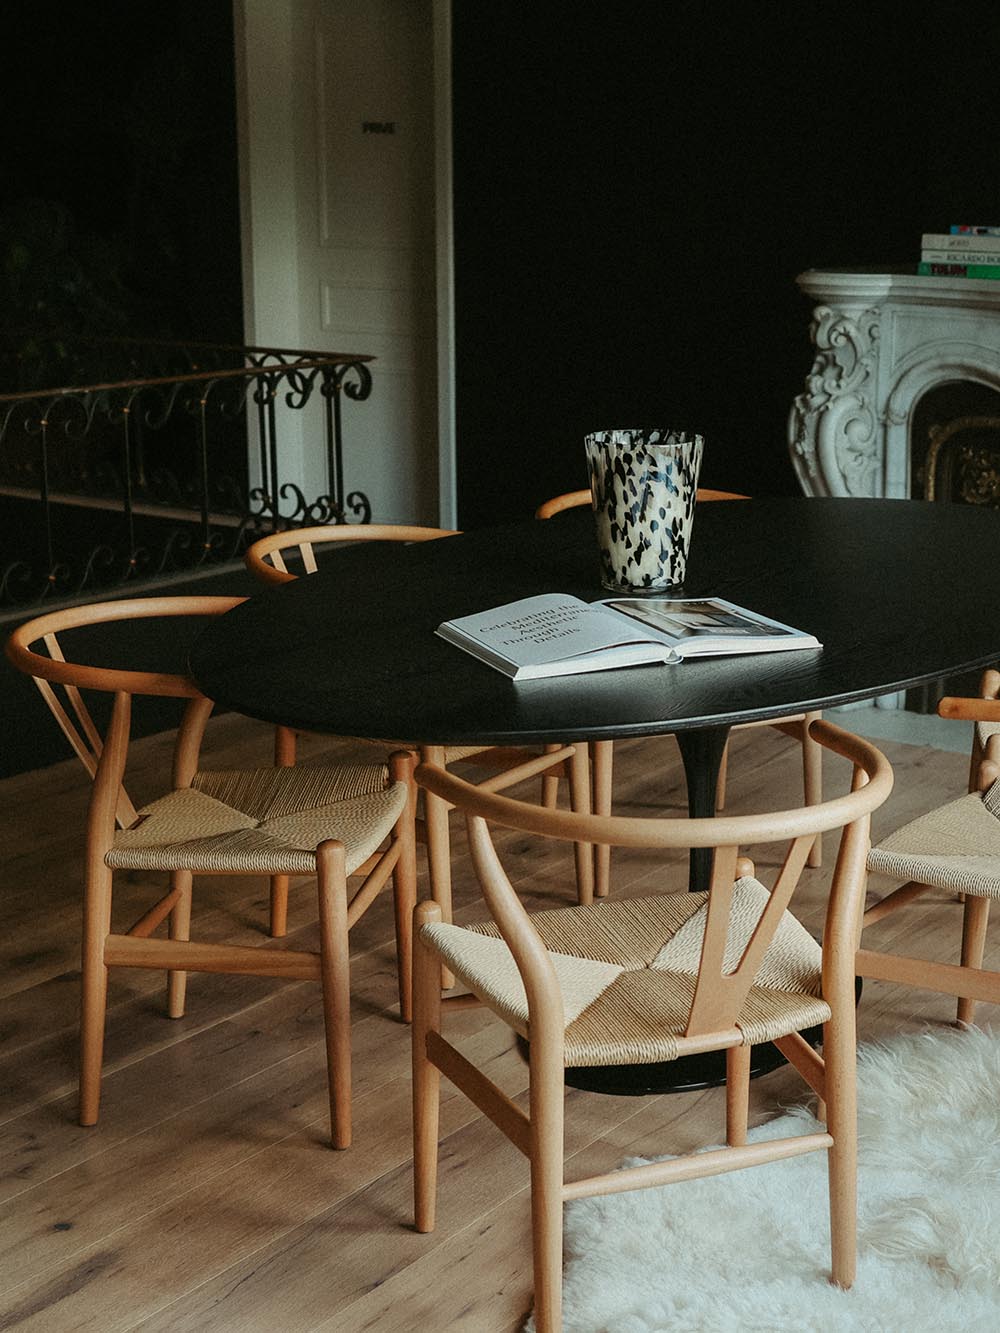 Ervaar de moderniteit en stijl met onze ovale Poppy Tulip tafel, met een verfijnd zwart essenfineer blad van 200cm op 120cm.